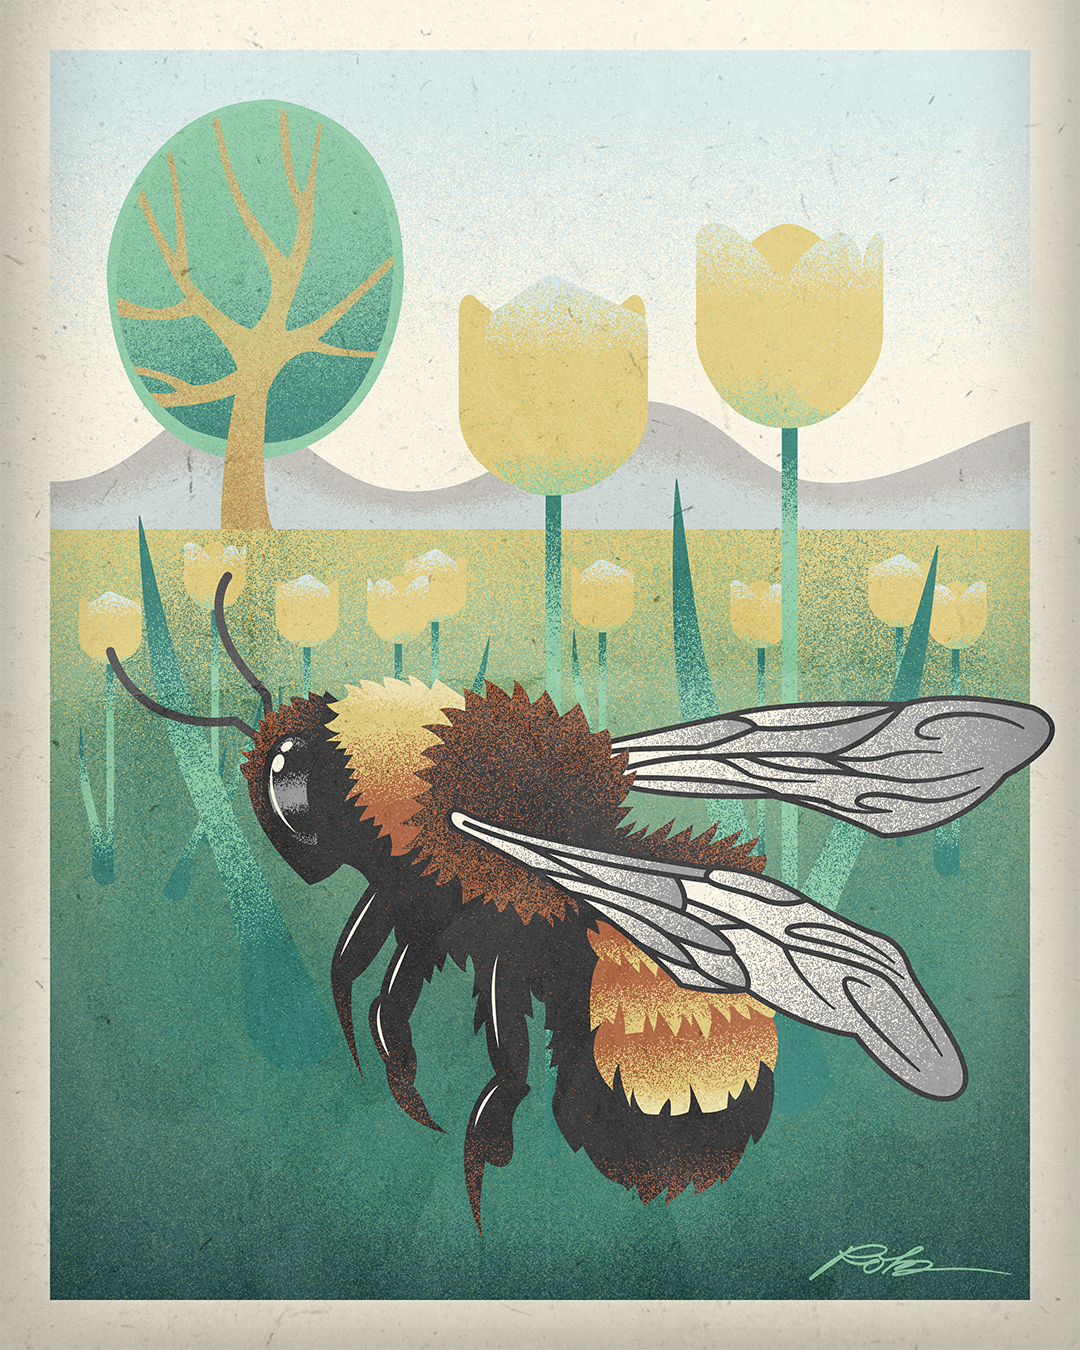 Retro Bee Illustration Poster Rob Knapp Design